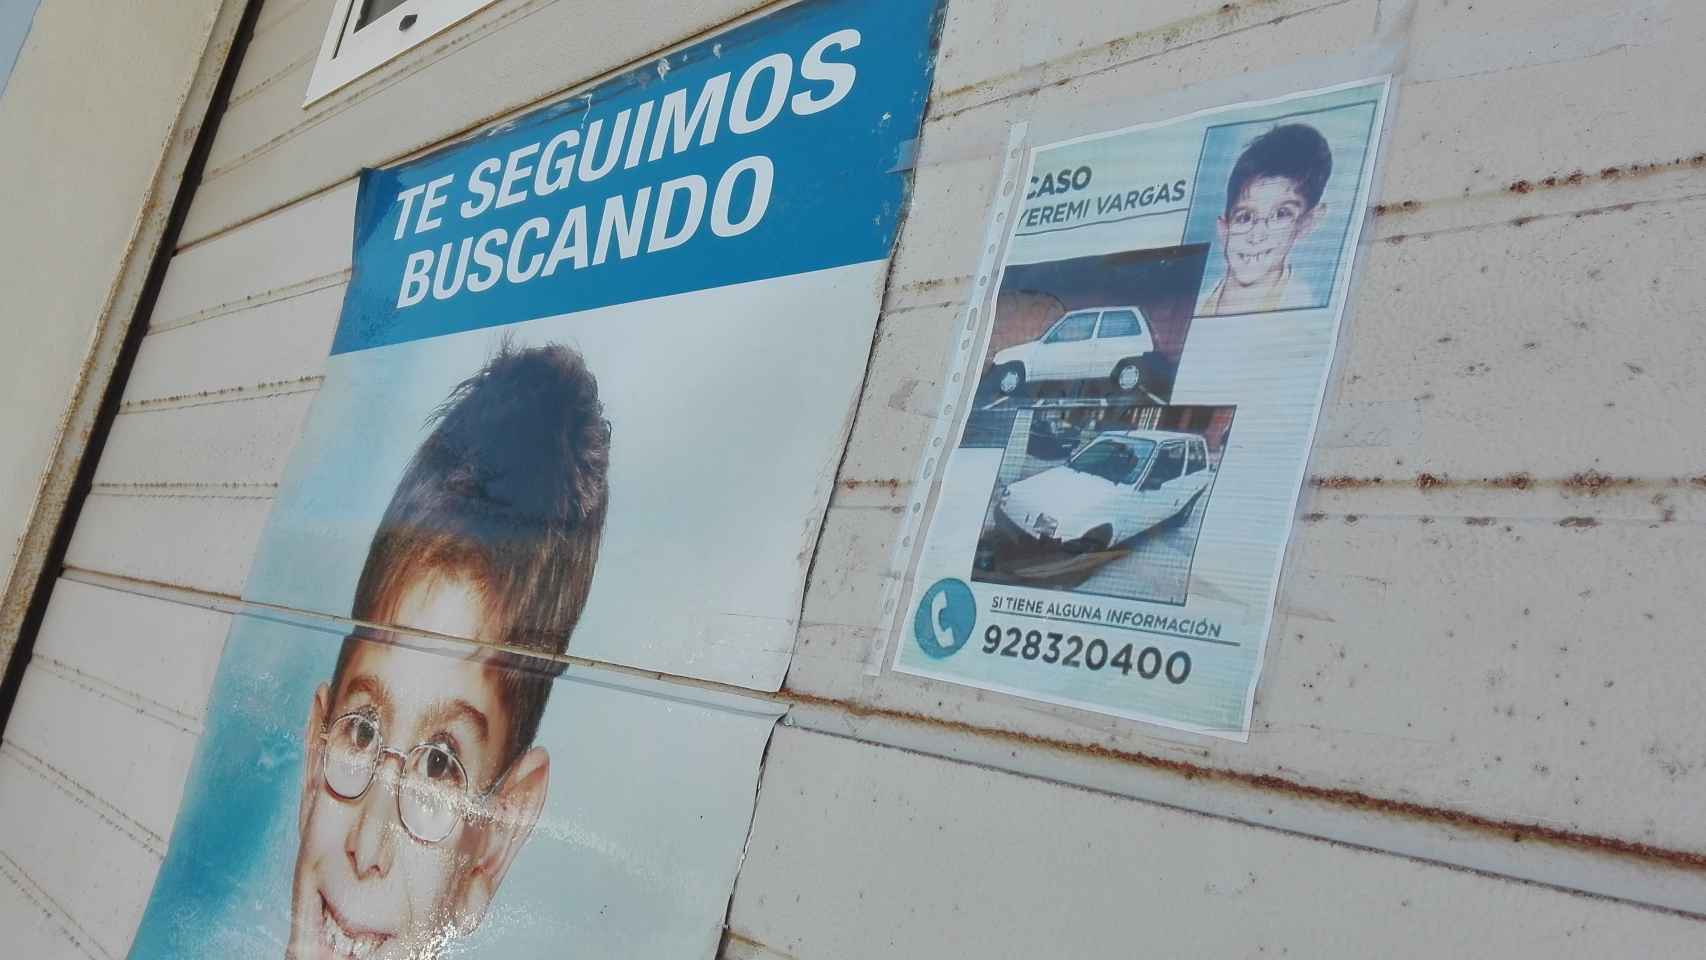 Fachada de la vivienda de los abuelos de Yéremi Vargas, con carteles con su foto.